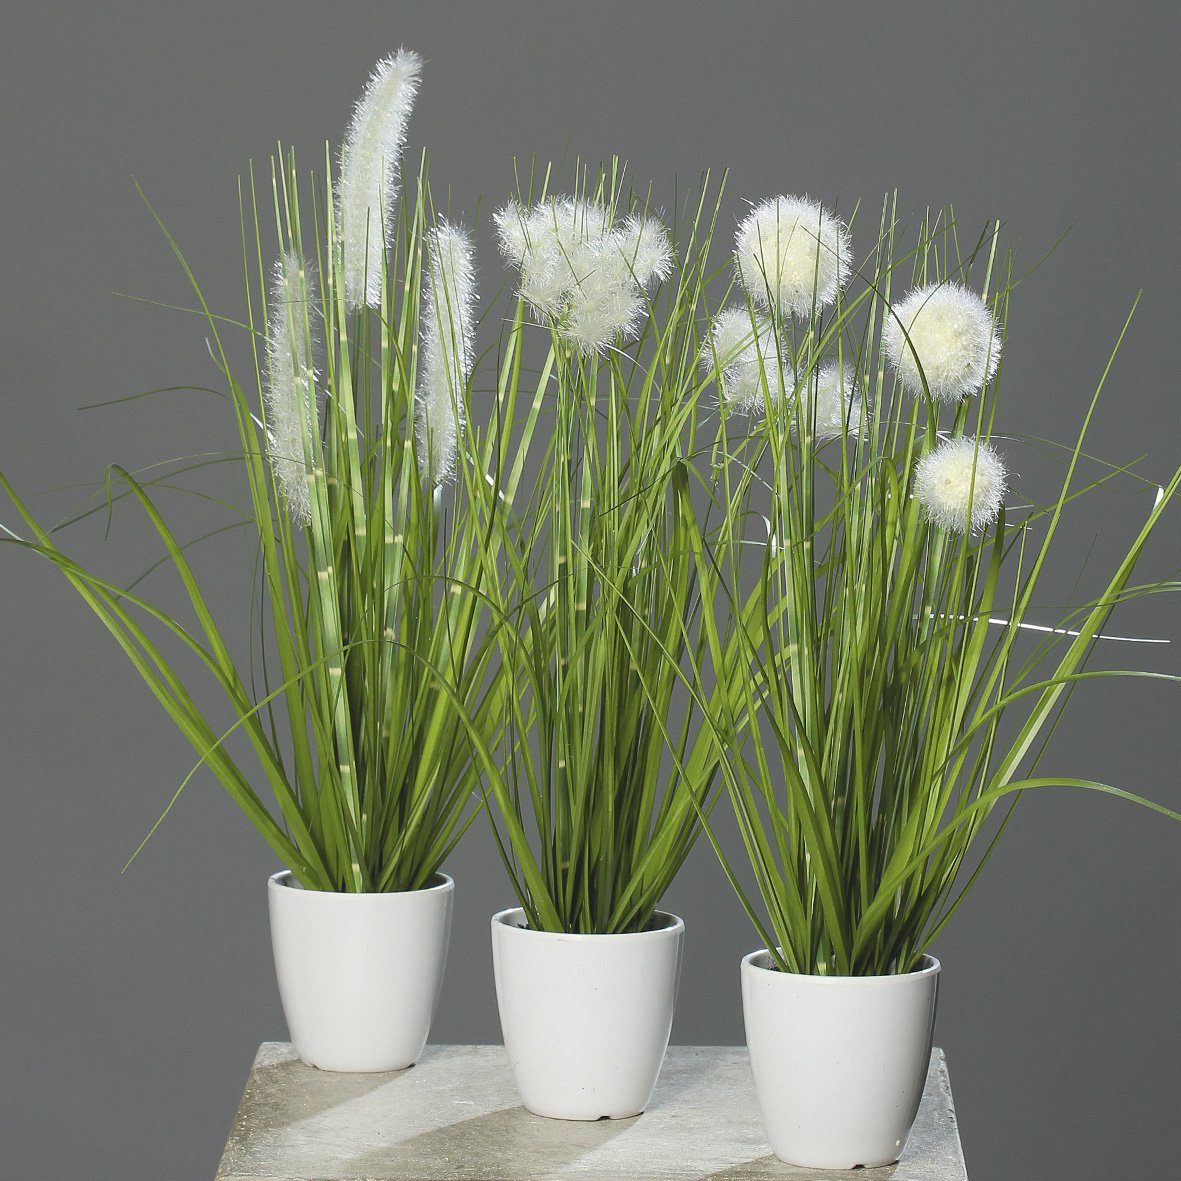 Kunstpflanze Kunstpflanze Gras im H38cm Grün/Creme Topf weißen Kunstgras, mucPlants 3 Stück